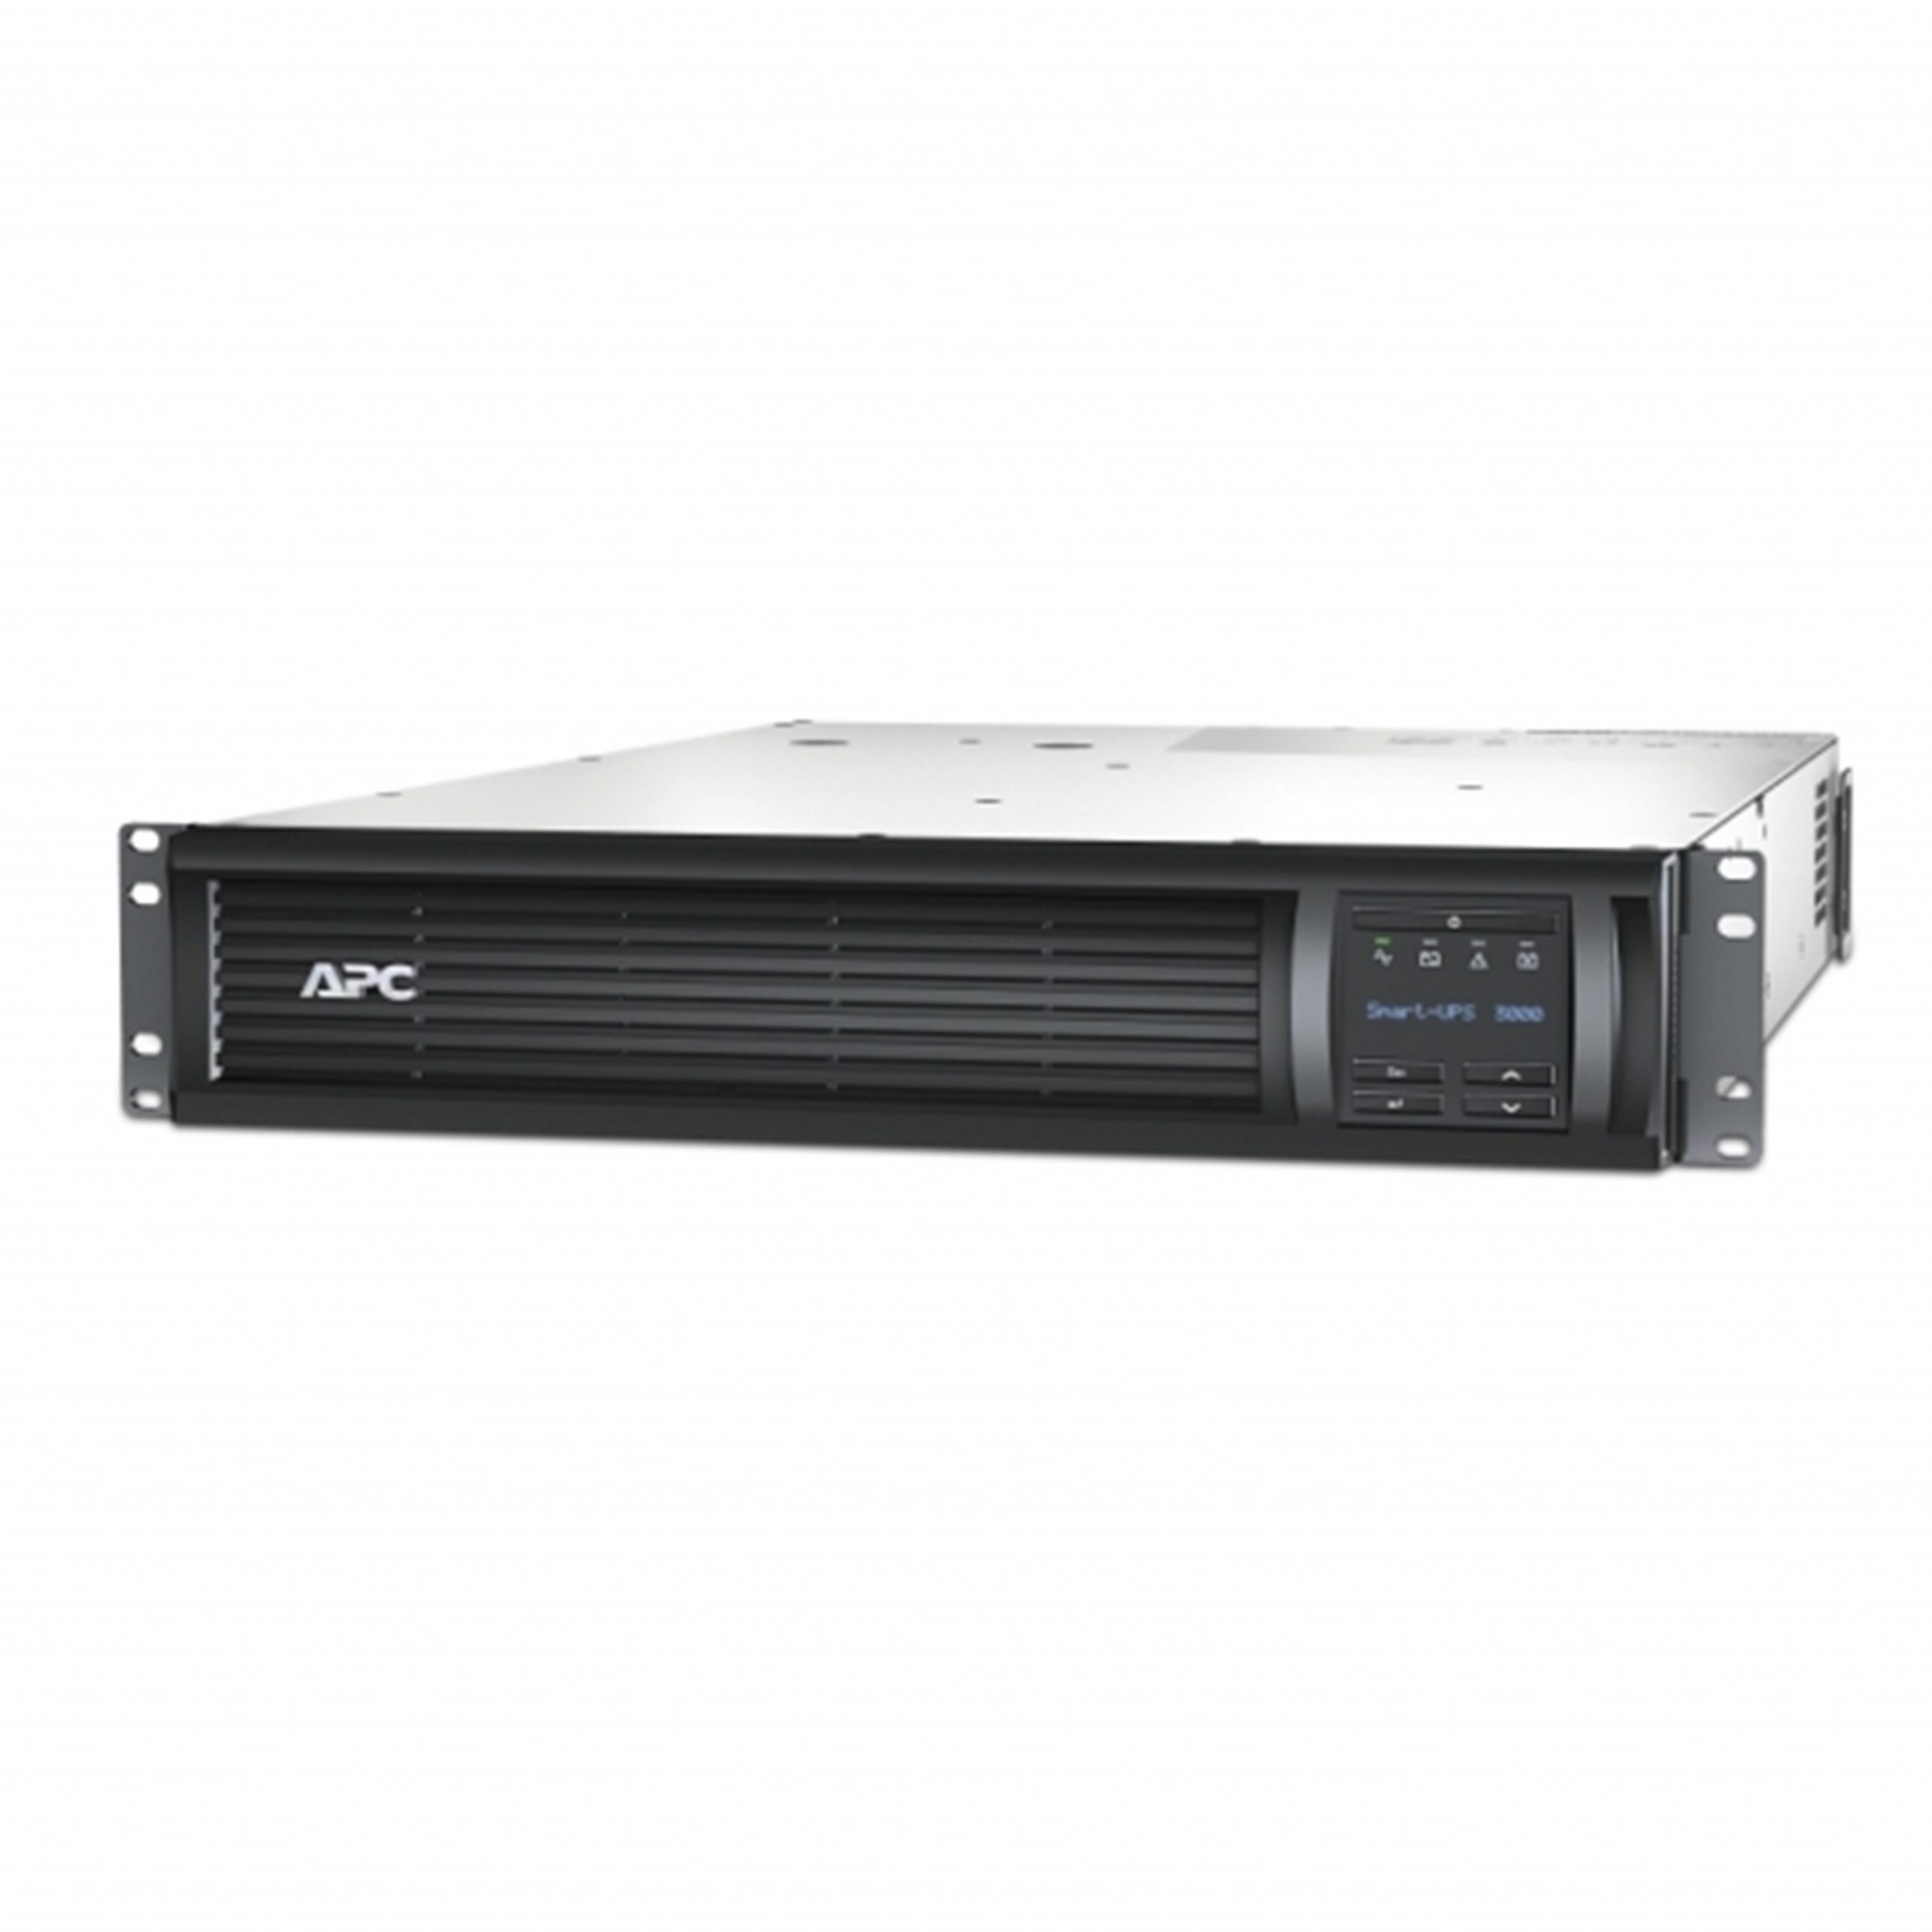 APC Smart-UPS 3000 VA SMT3000RMI2U